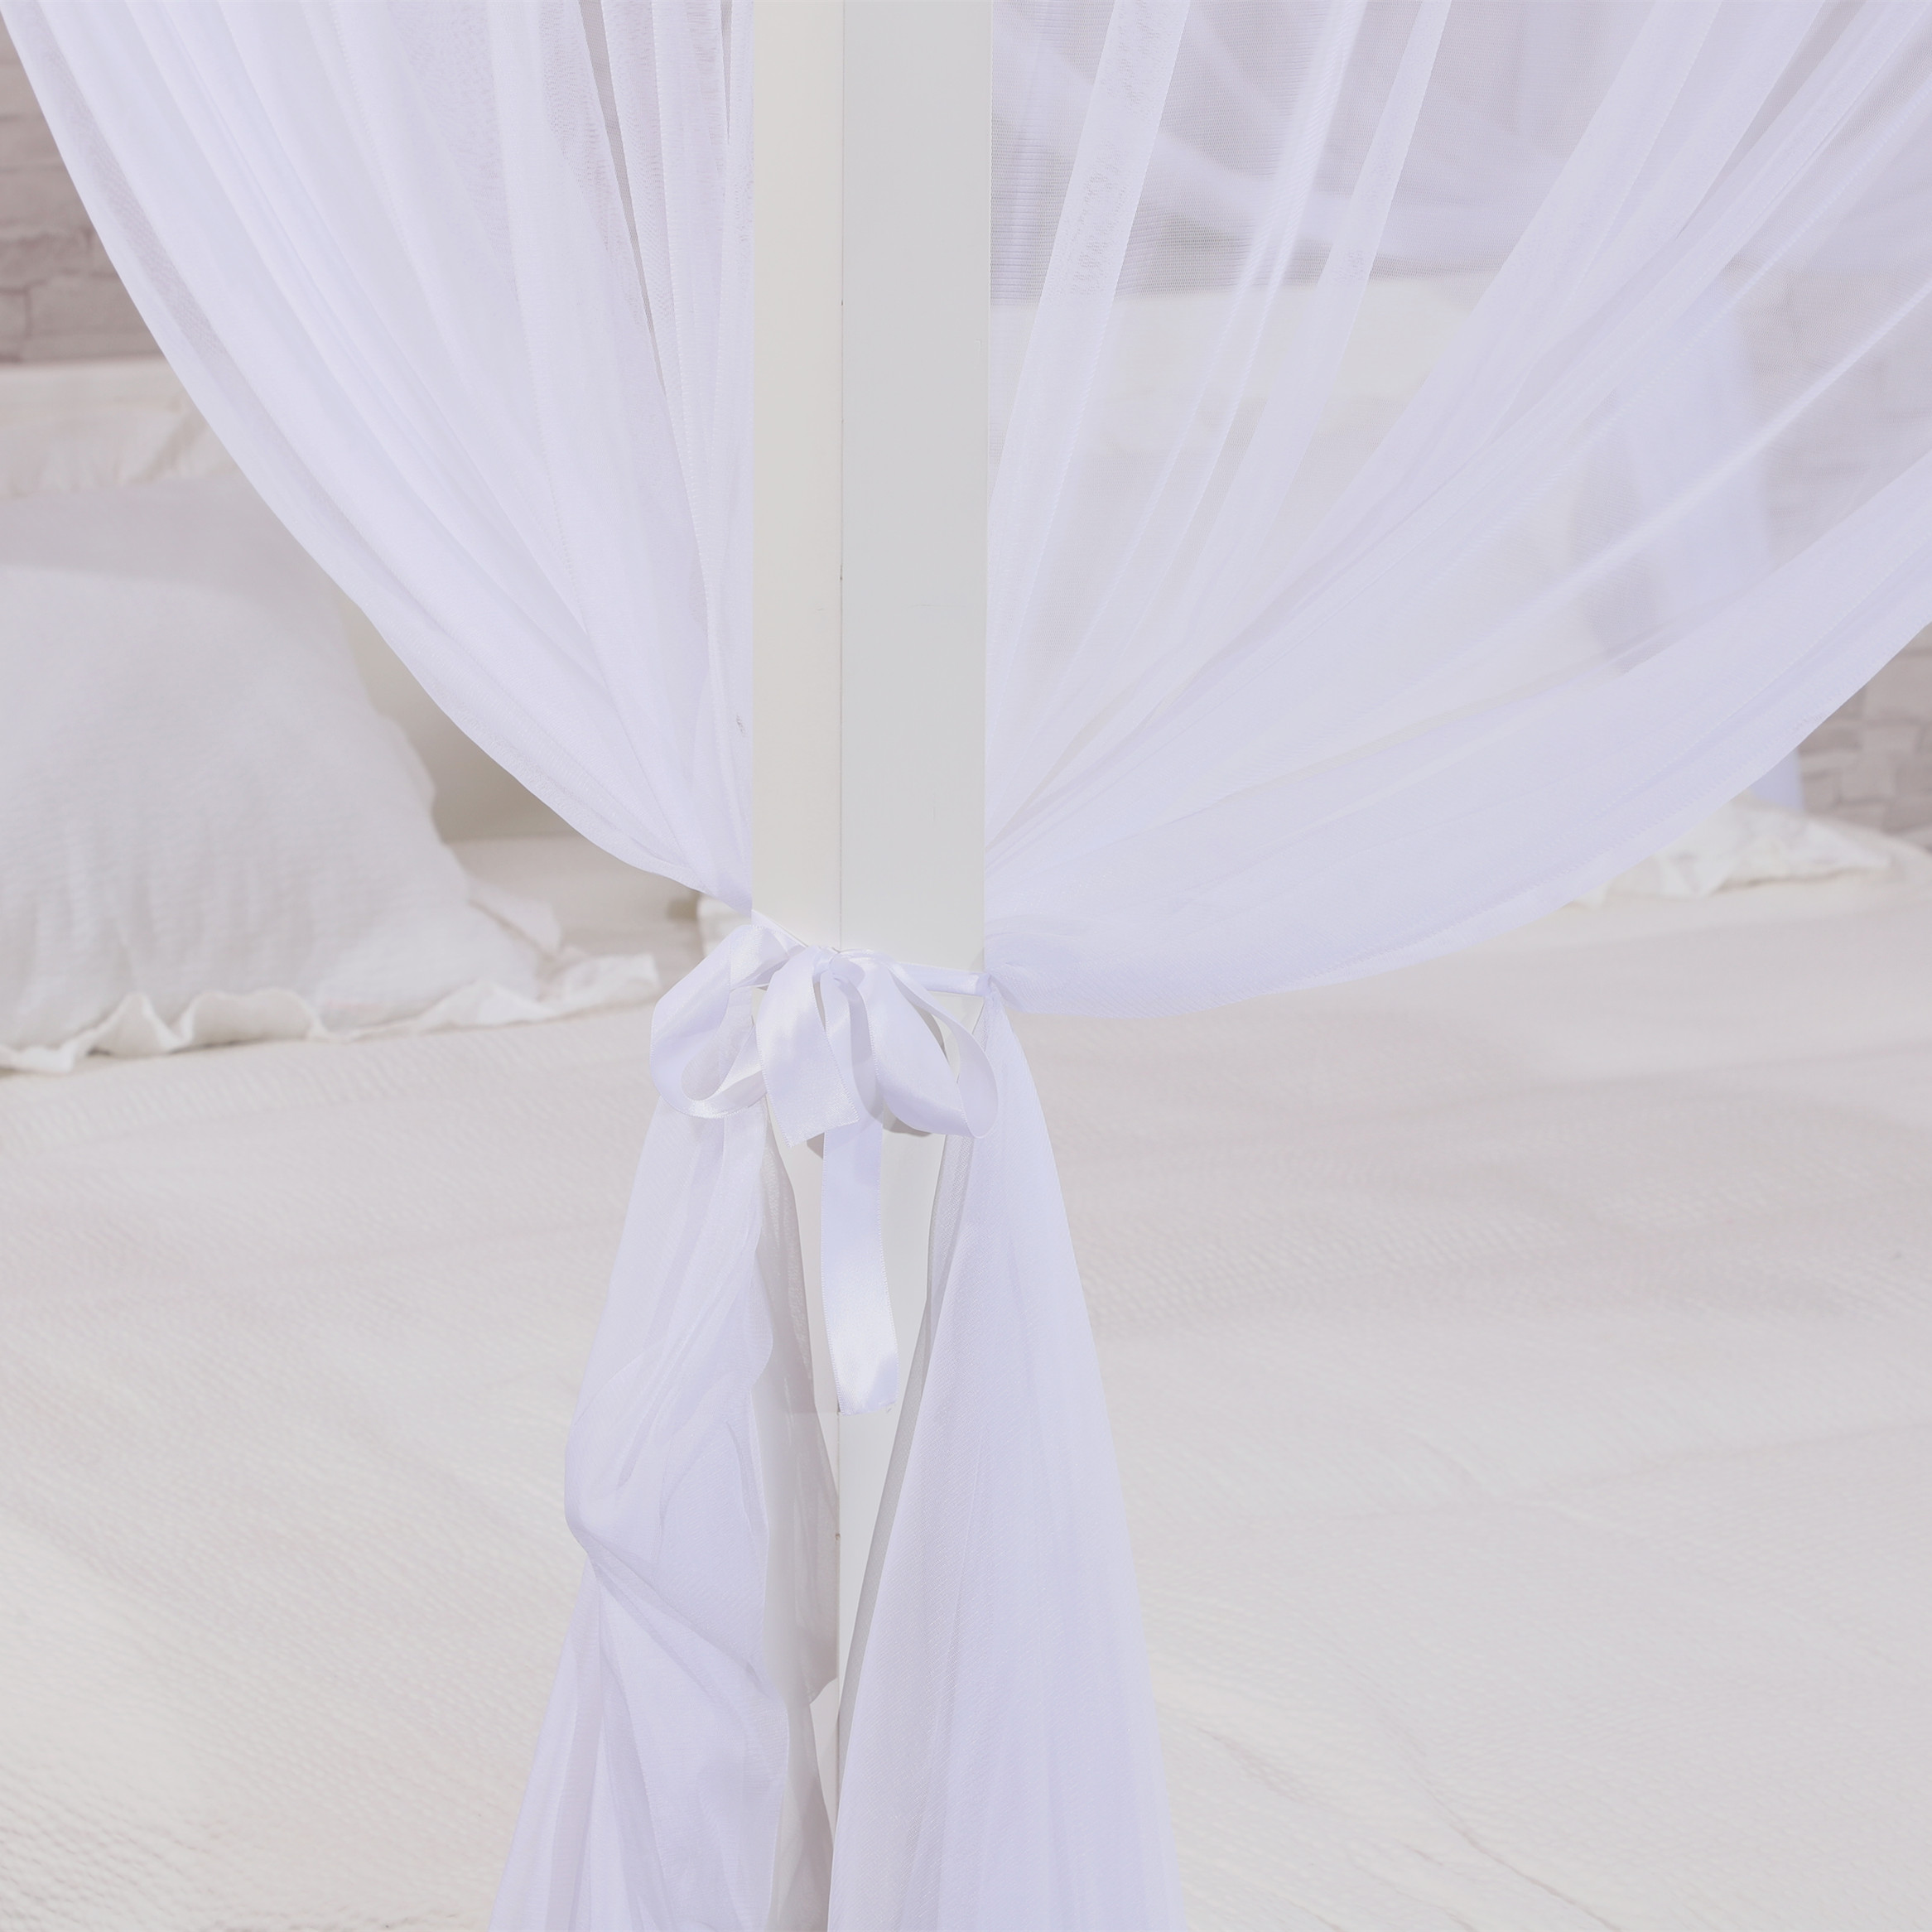 Gute Qualität weiße Blume Spitze Rechteck King Size Hotel Schlafzimmer Moskito Bett Netze für Doppelbett